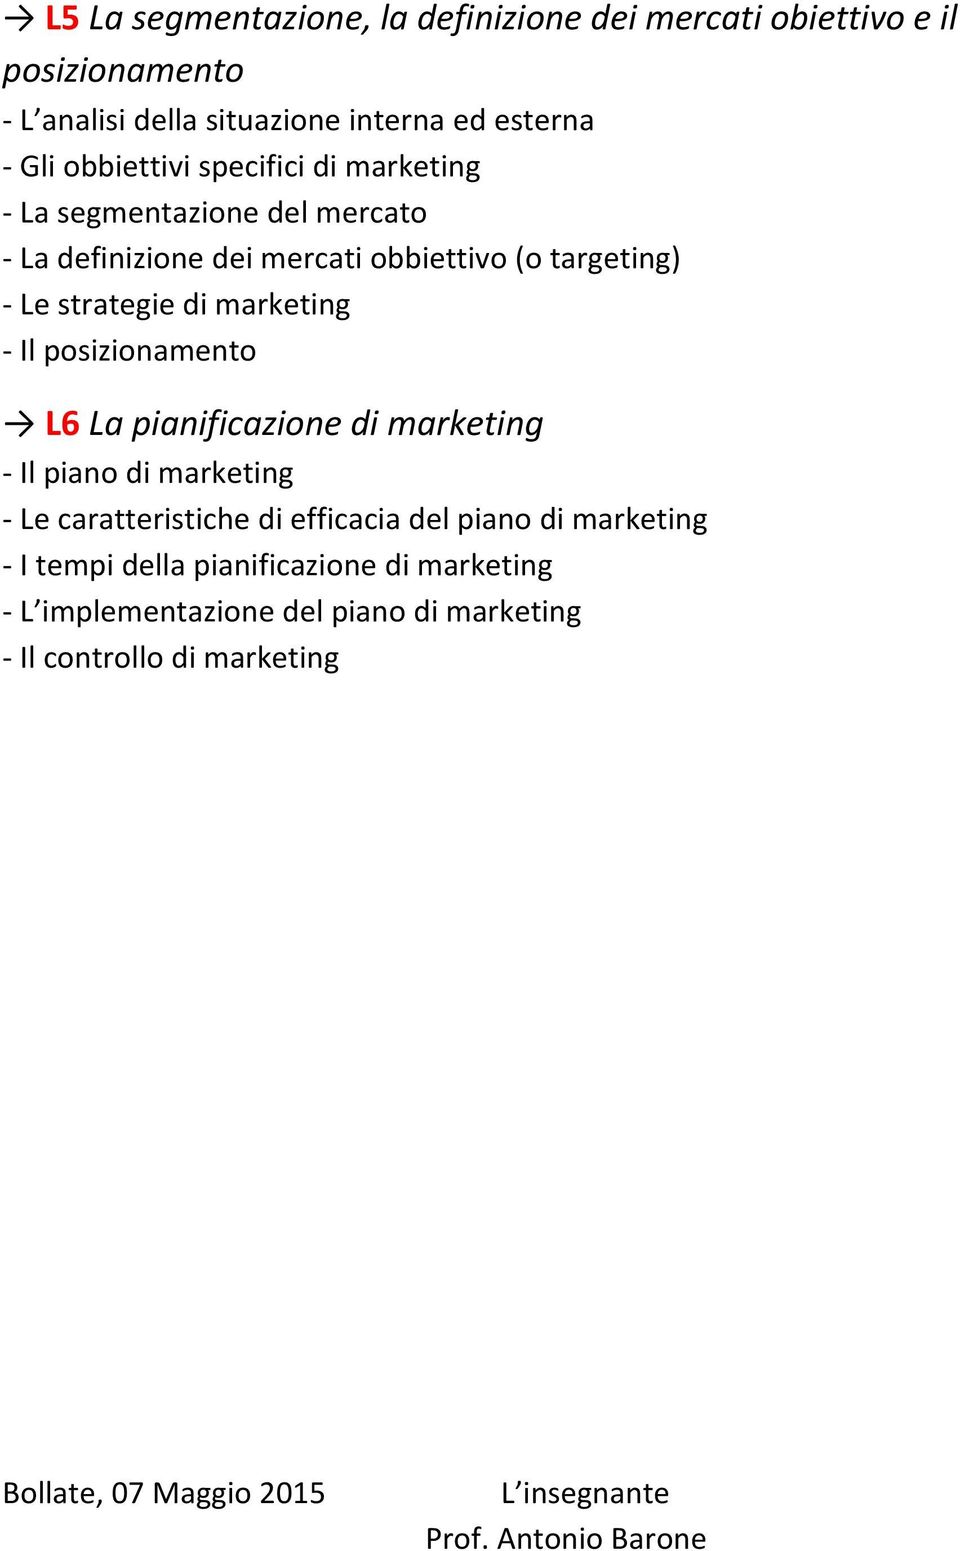 posizionamento L6 La pianificazione di marketing Il piano di marketing Le caratteristiche di efficacia del piano di marketing I tempi della